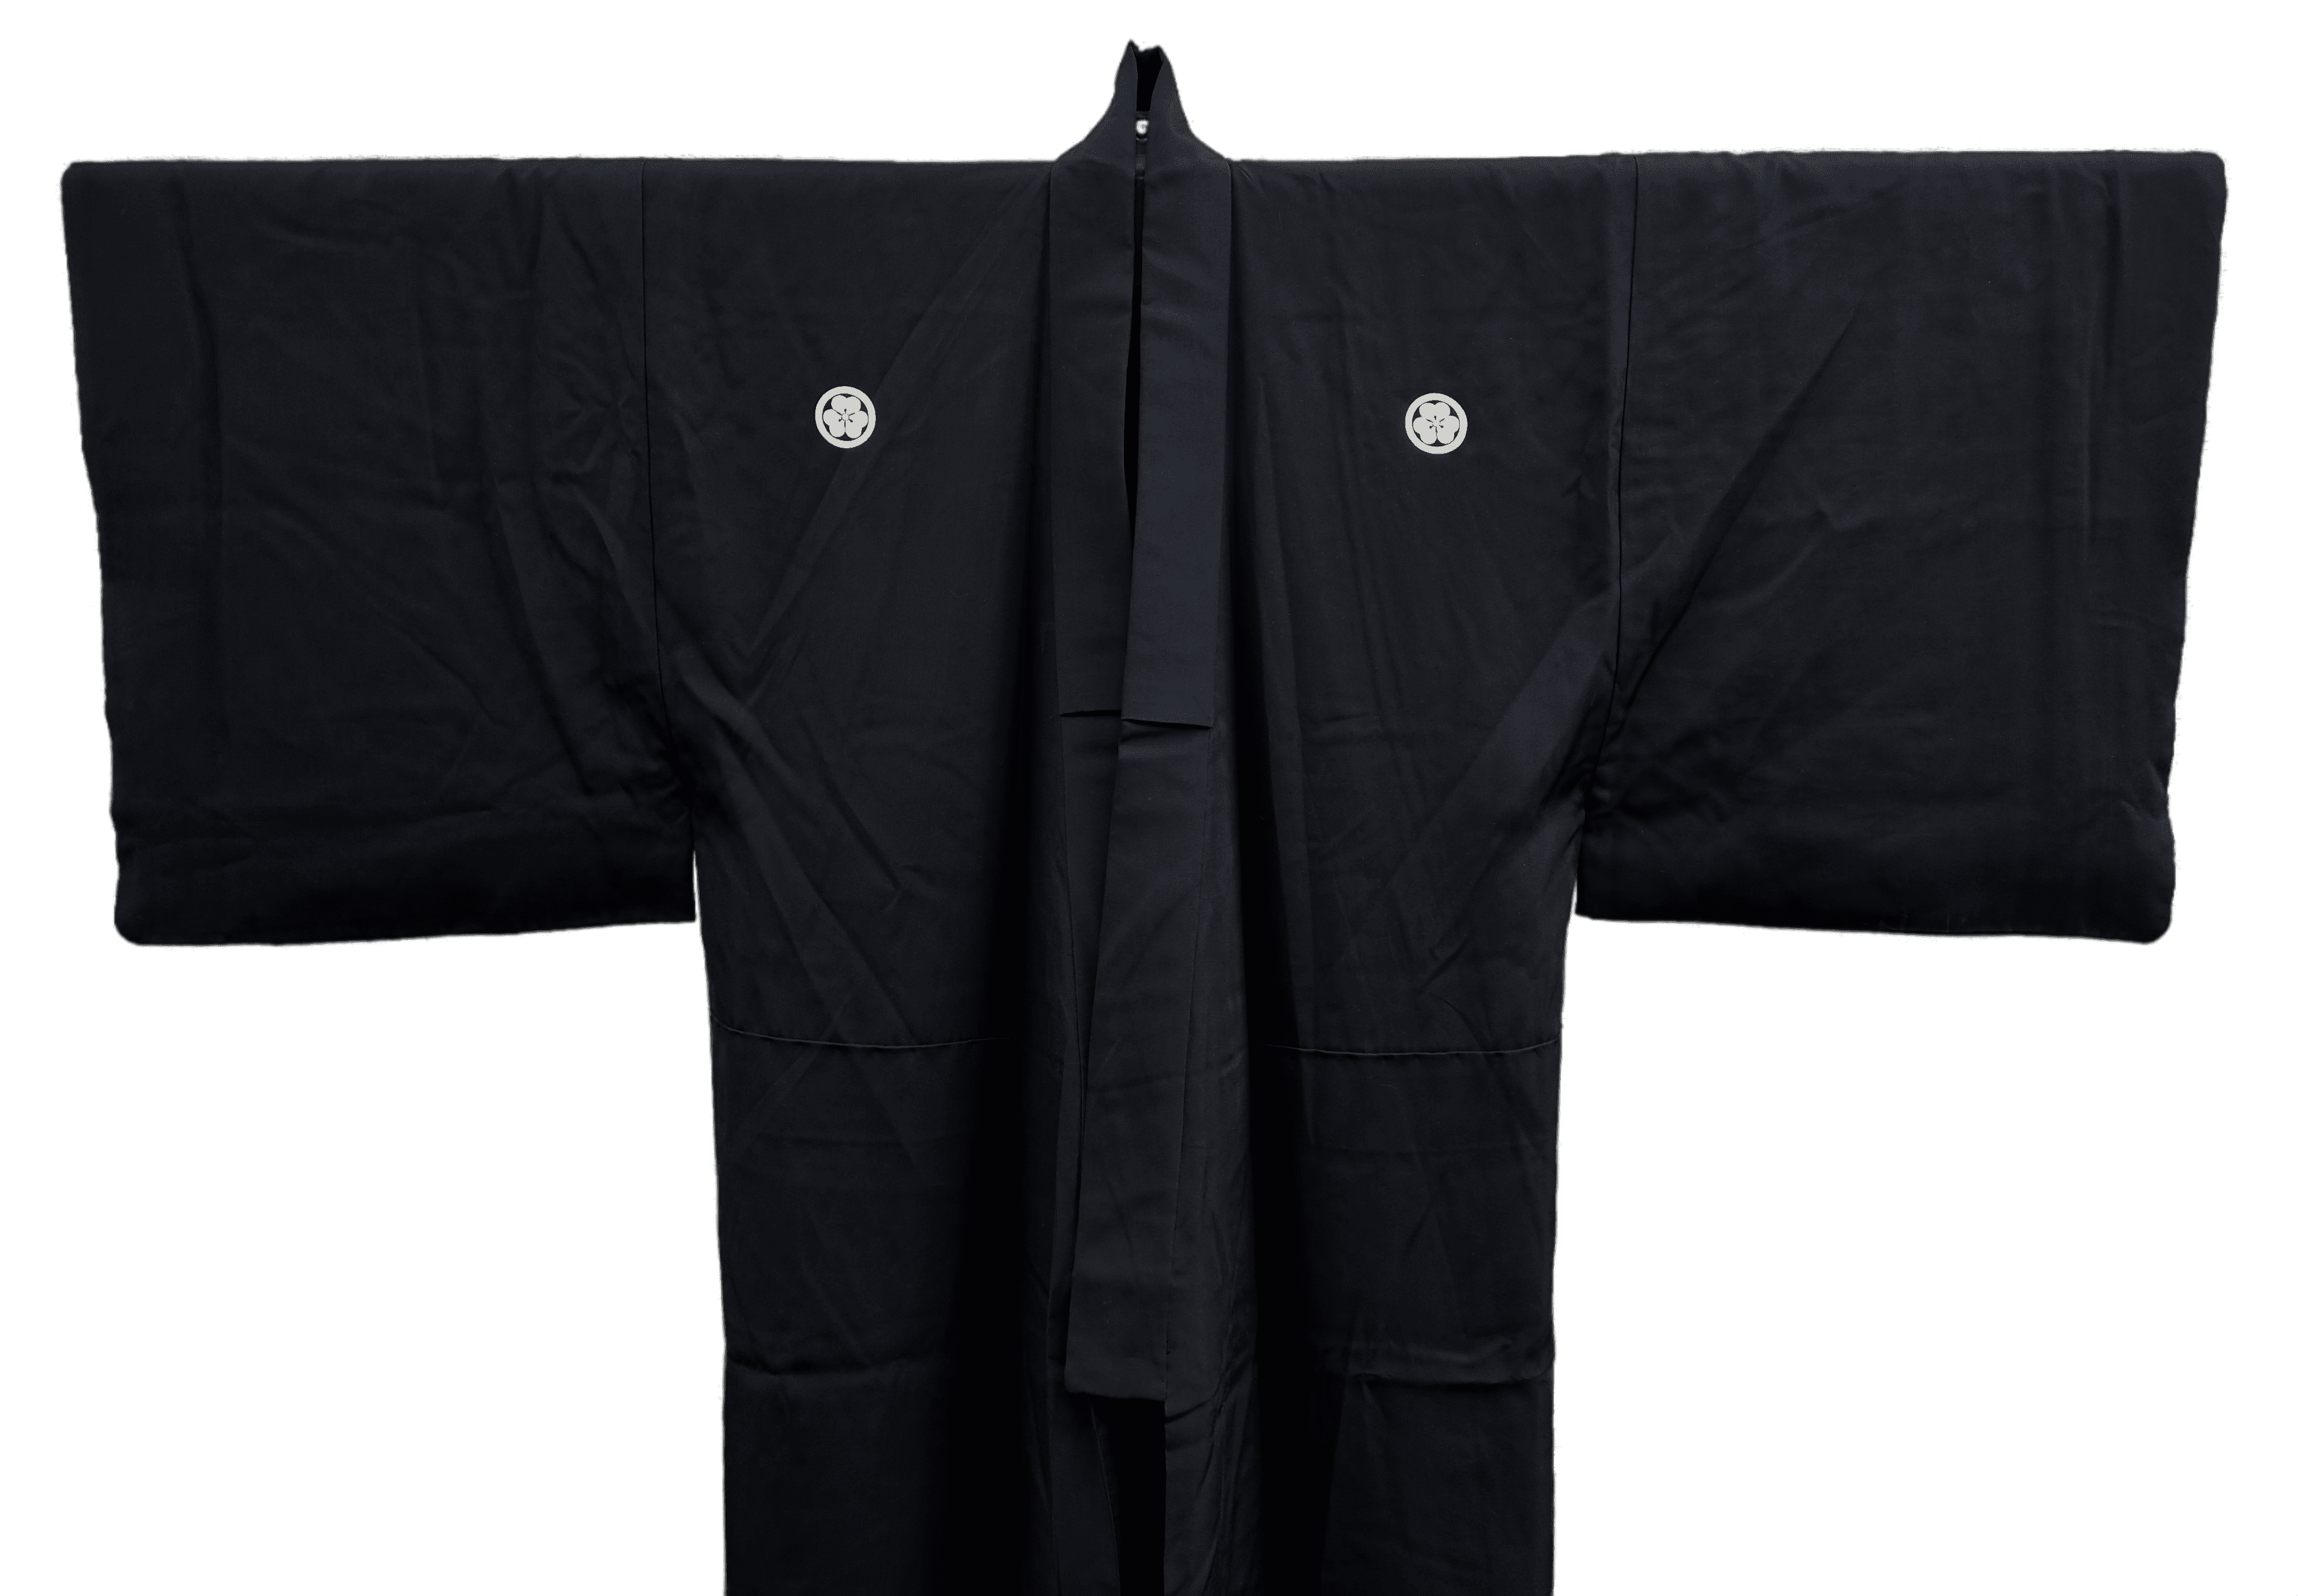 obere Hälfte schwarzer Reiso Kimono für Männer mit 5 Familienwappen